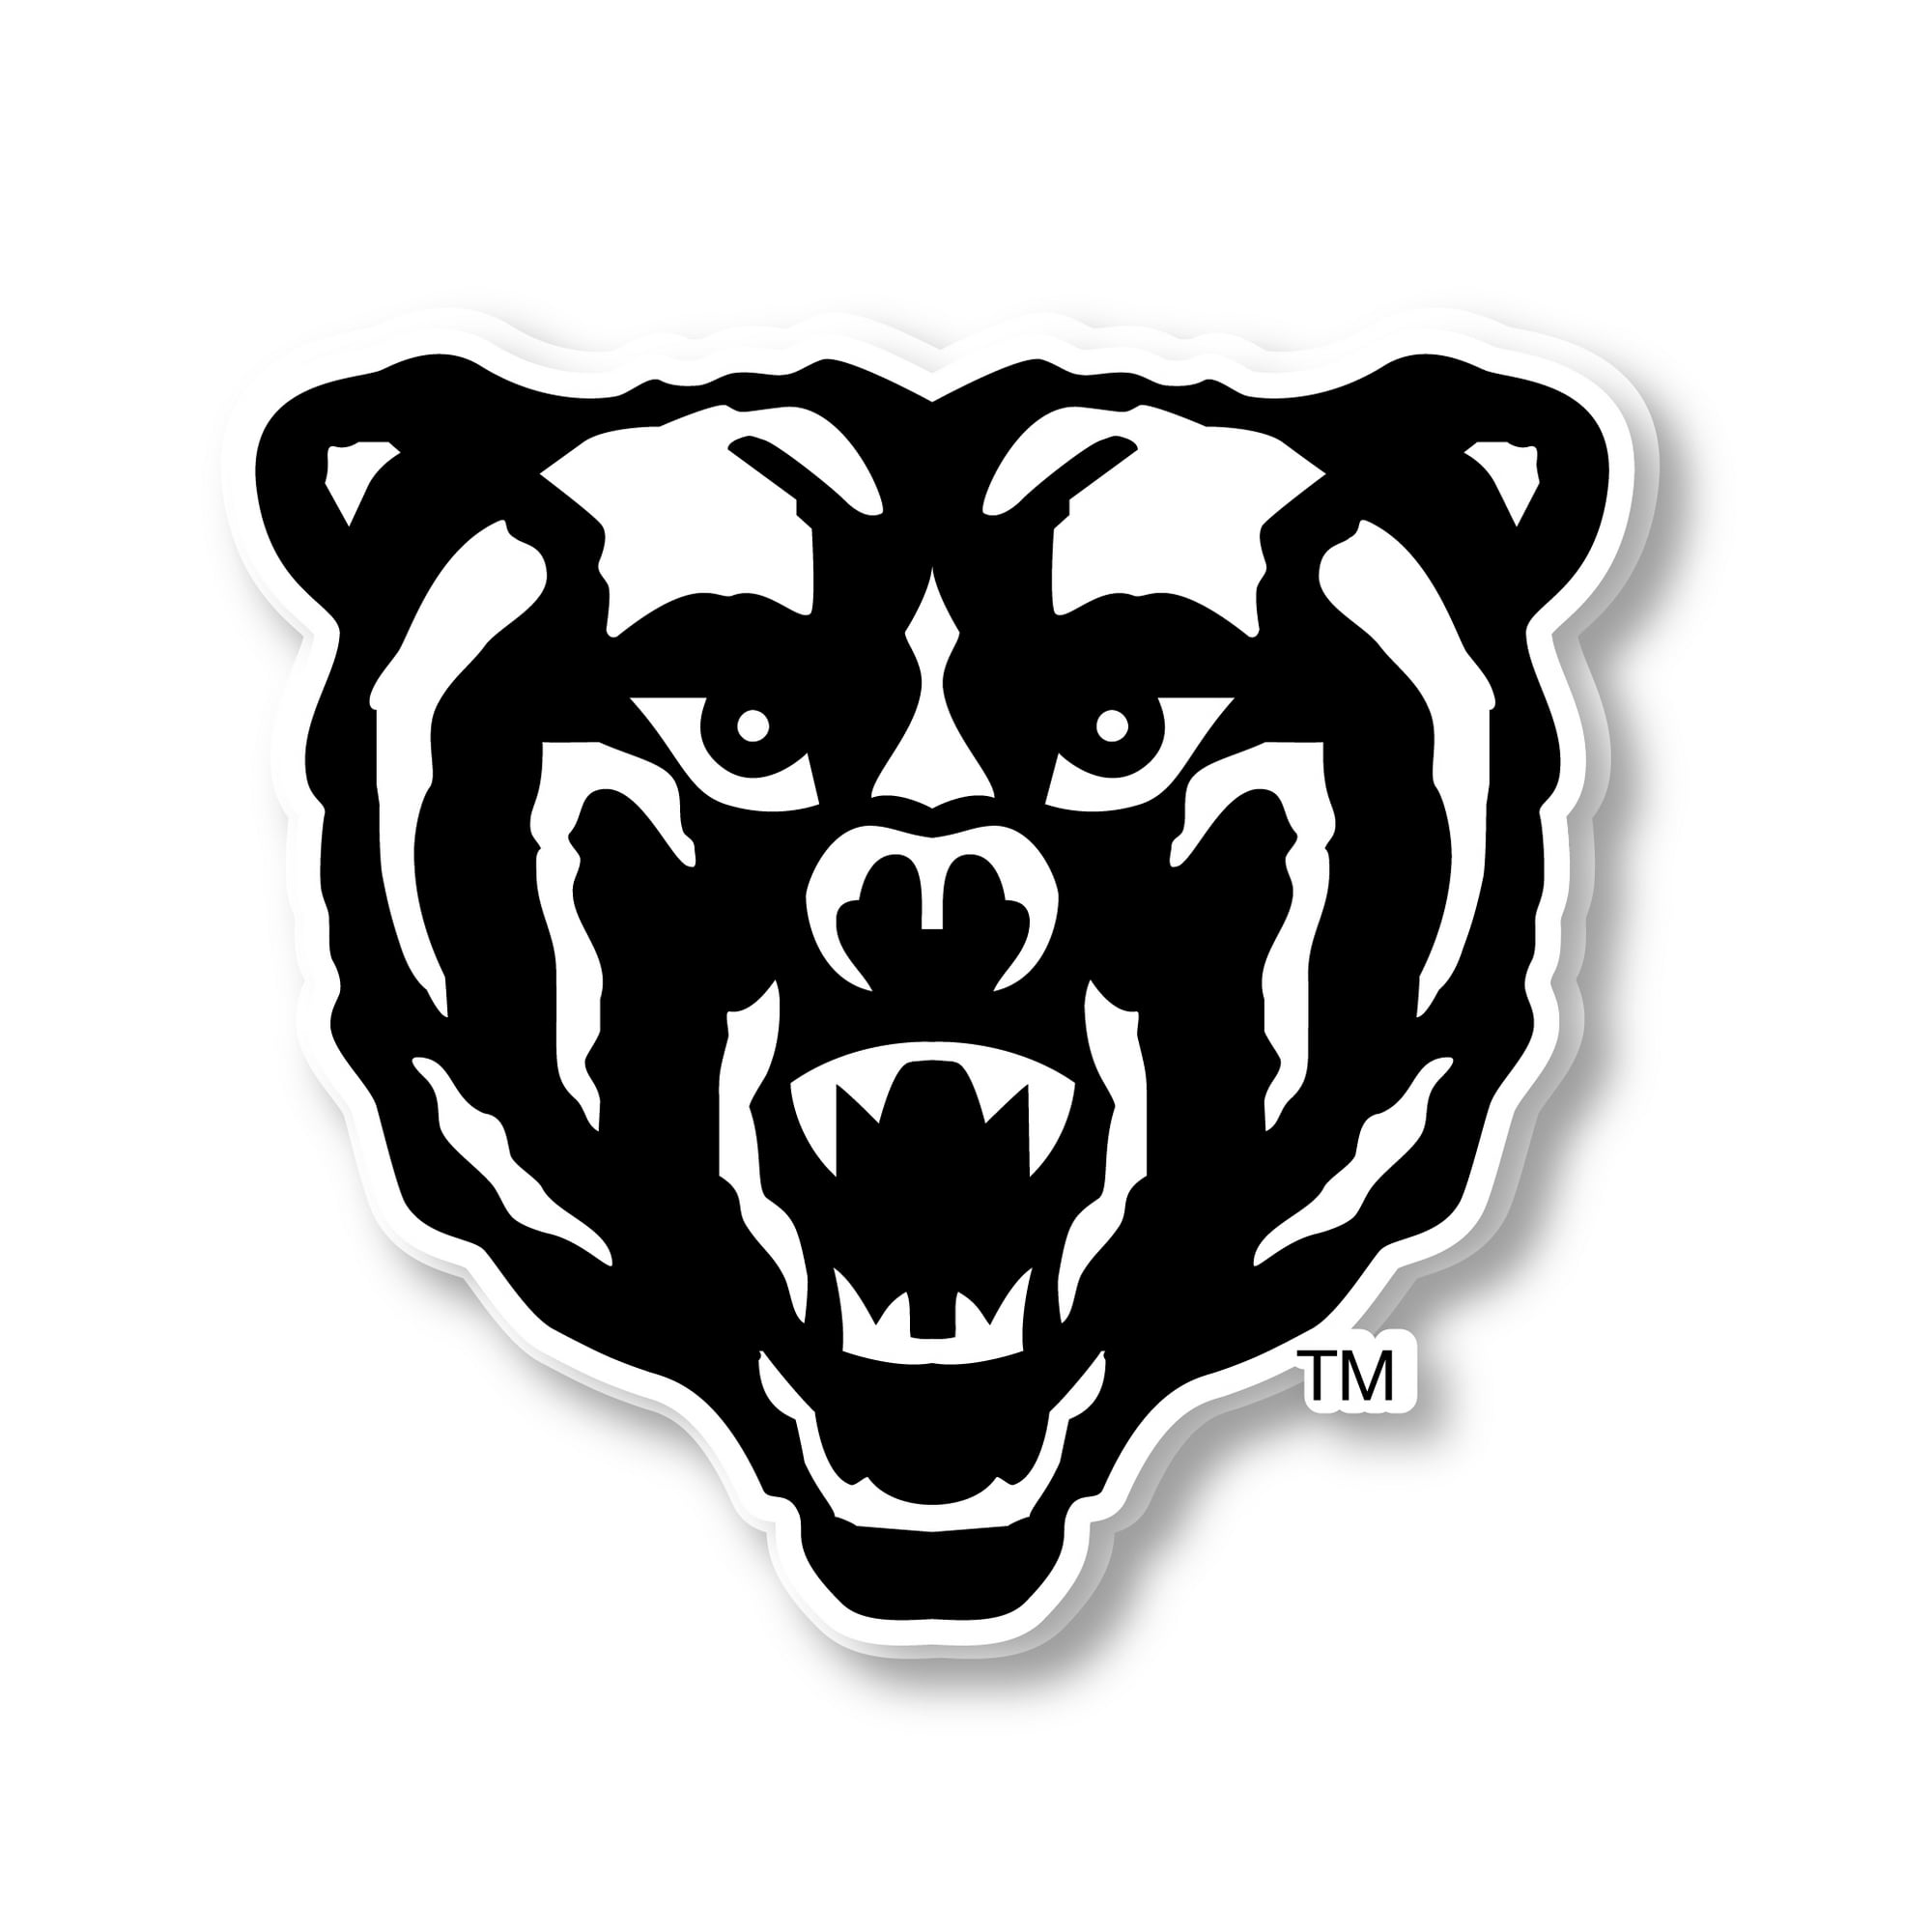 Chicago Bears Vinyl Sticker Decals